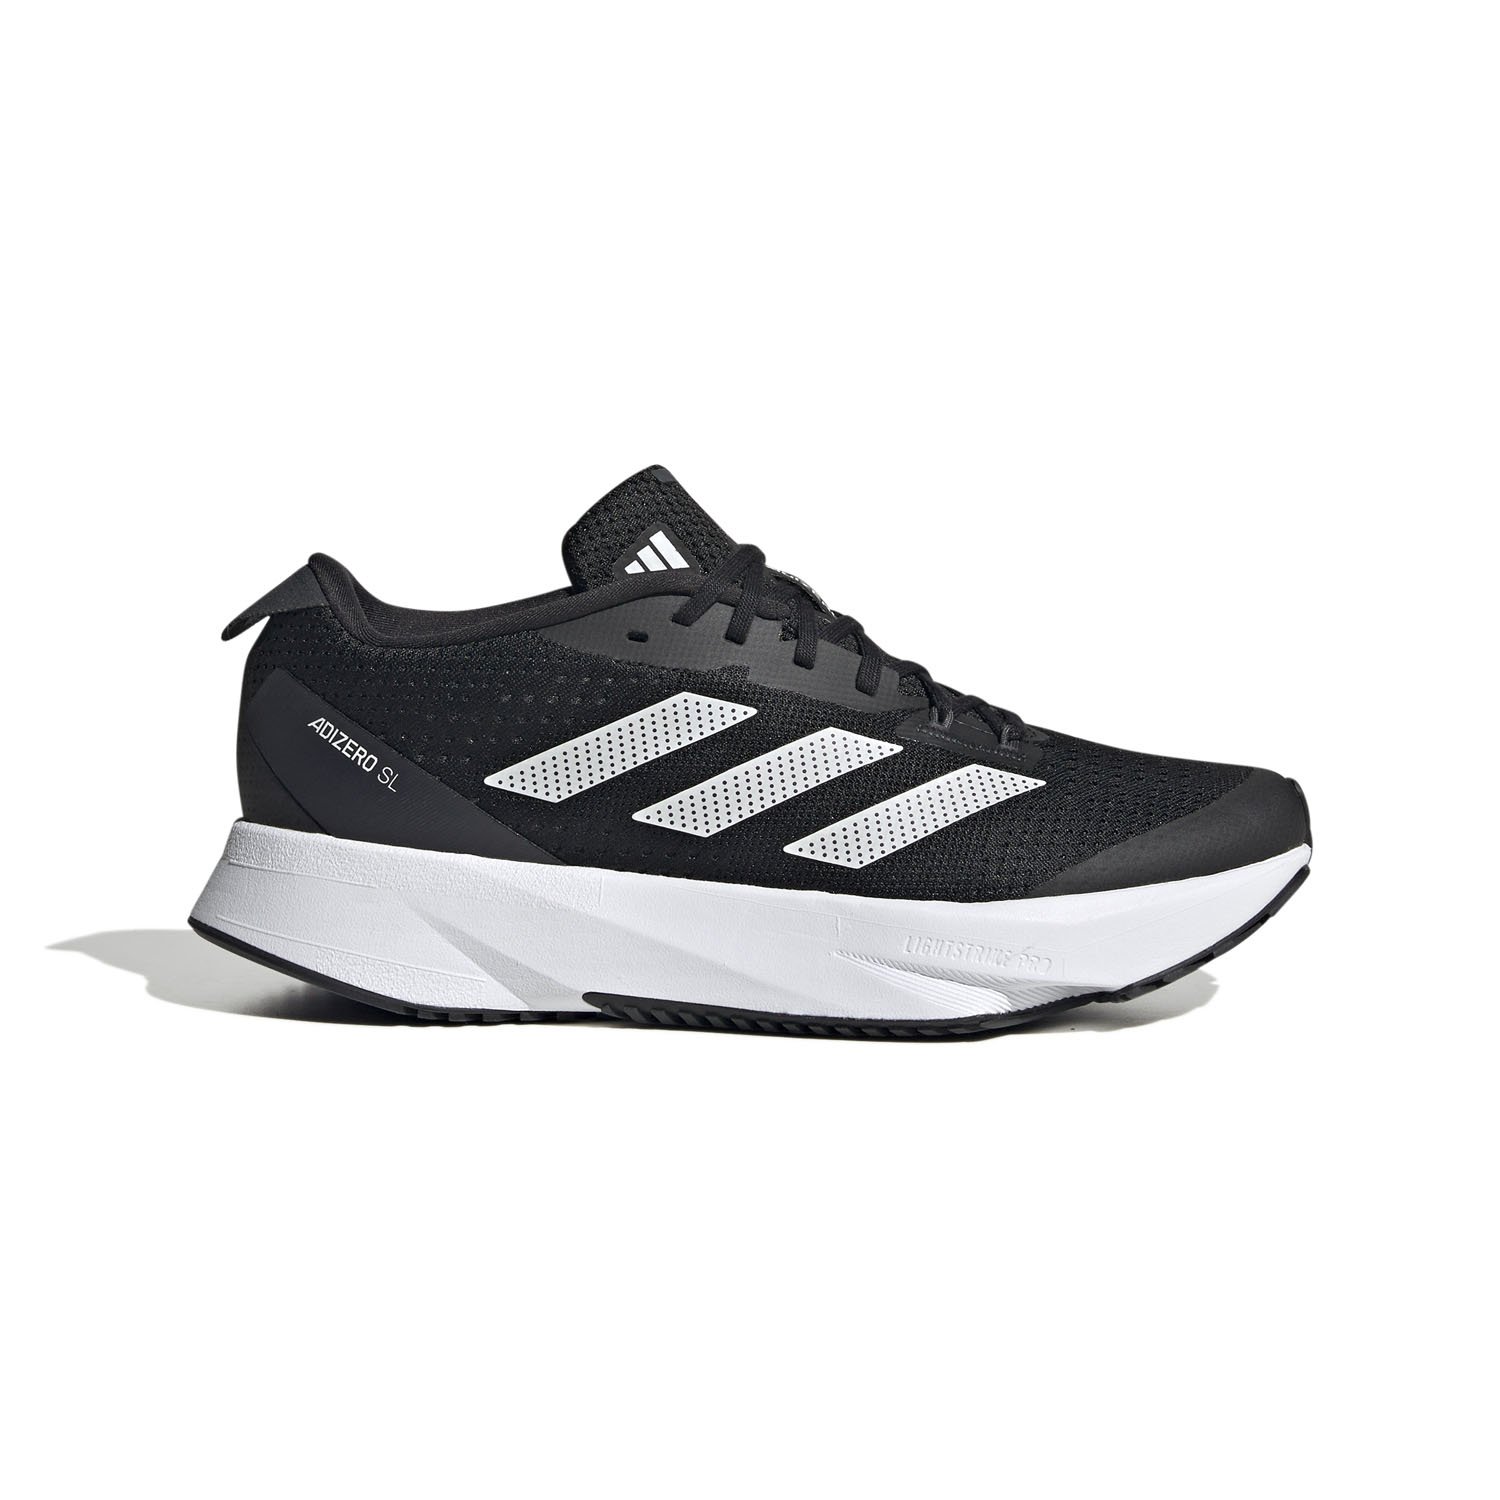 Adidas Adizero Kadın Koşu Ayakkabısı - SİYAH - 1